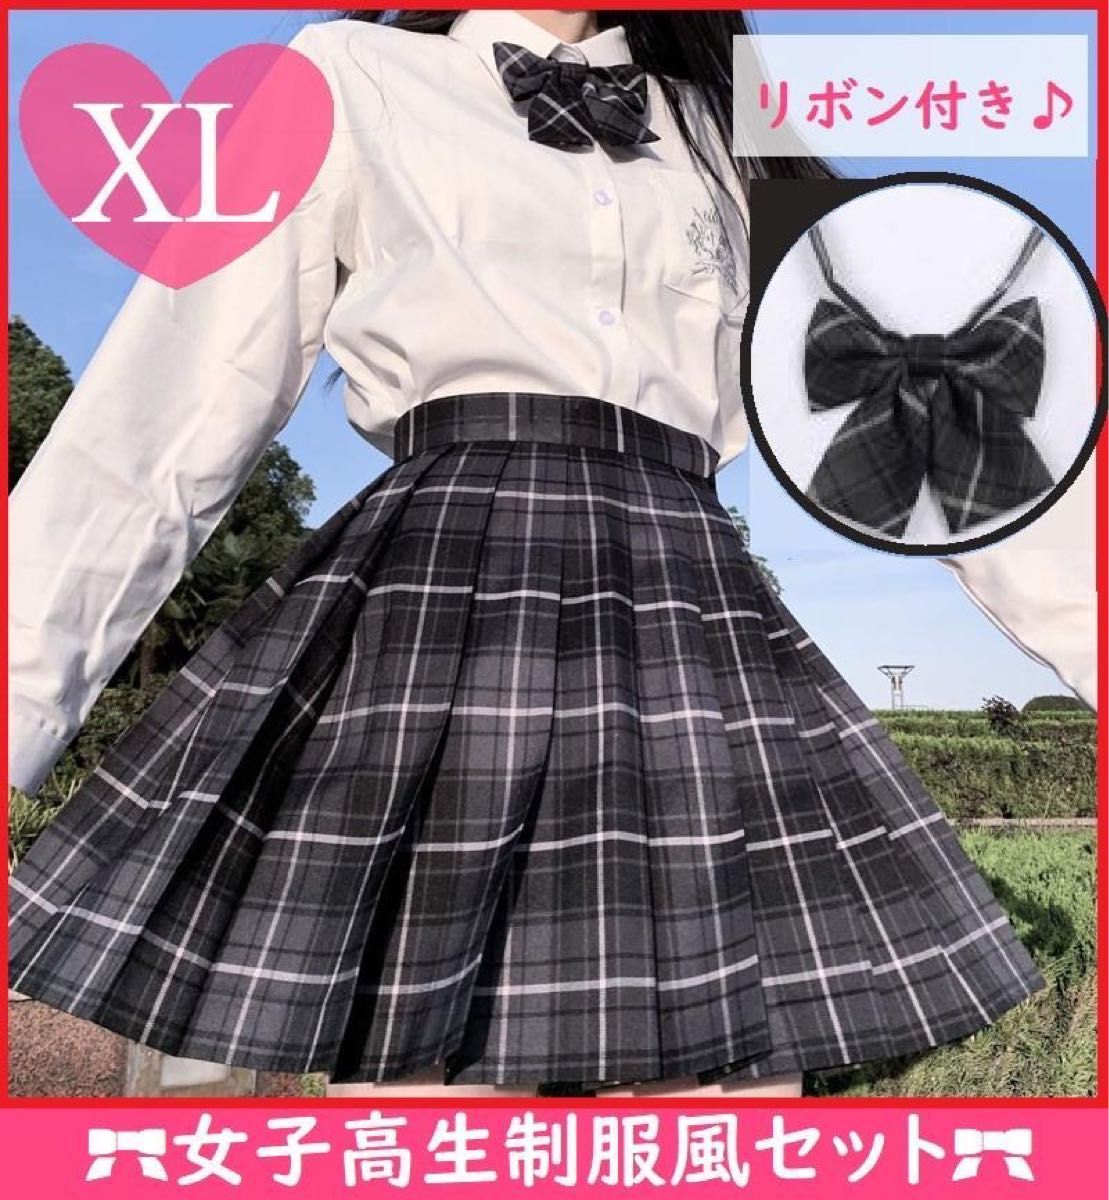 XLサイズ 【スカート＆リボン セット】女子高生 JK なんちゃって 制服 高校 チェック柄 スカート リボン